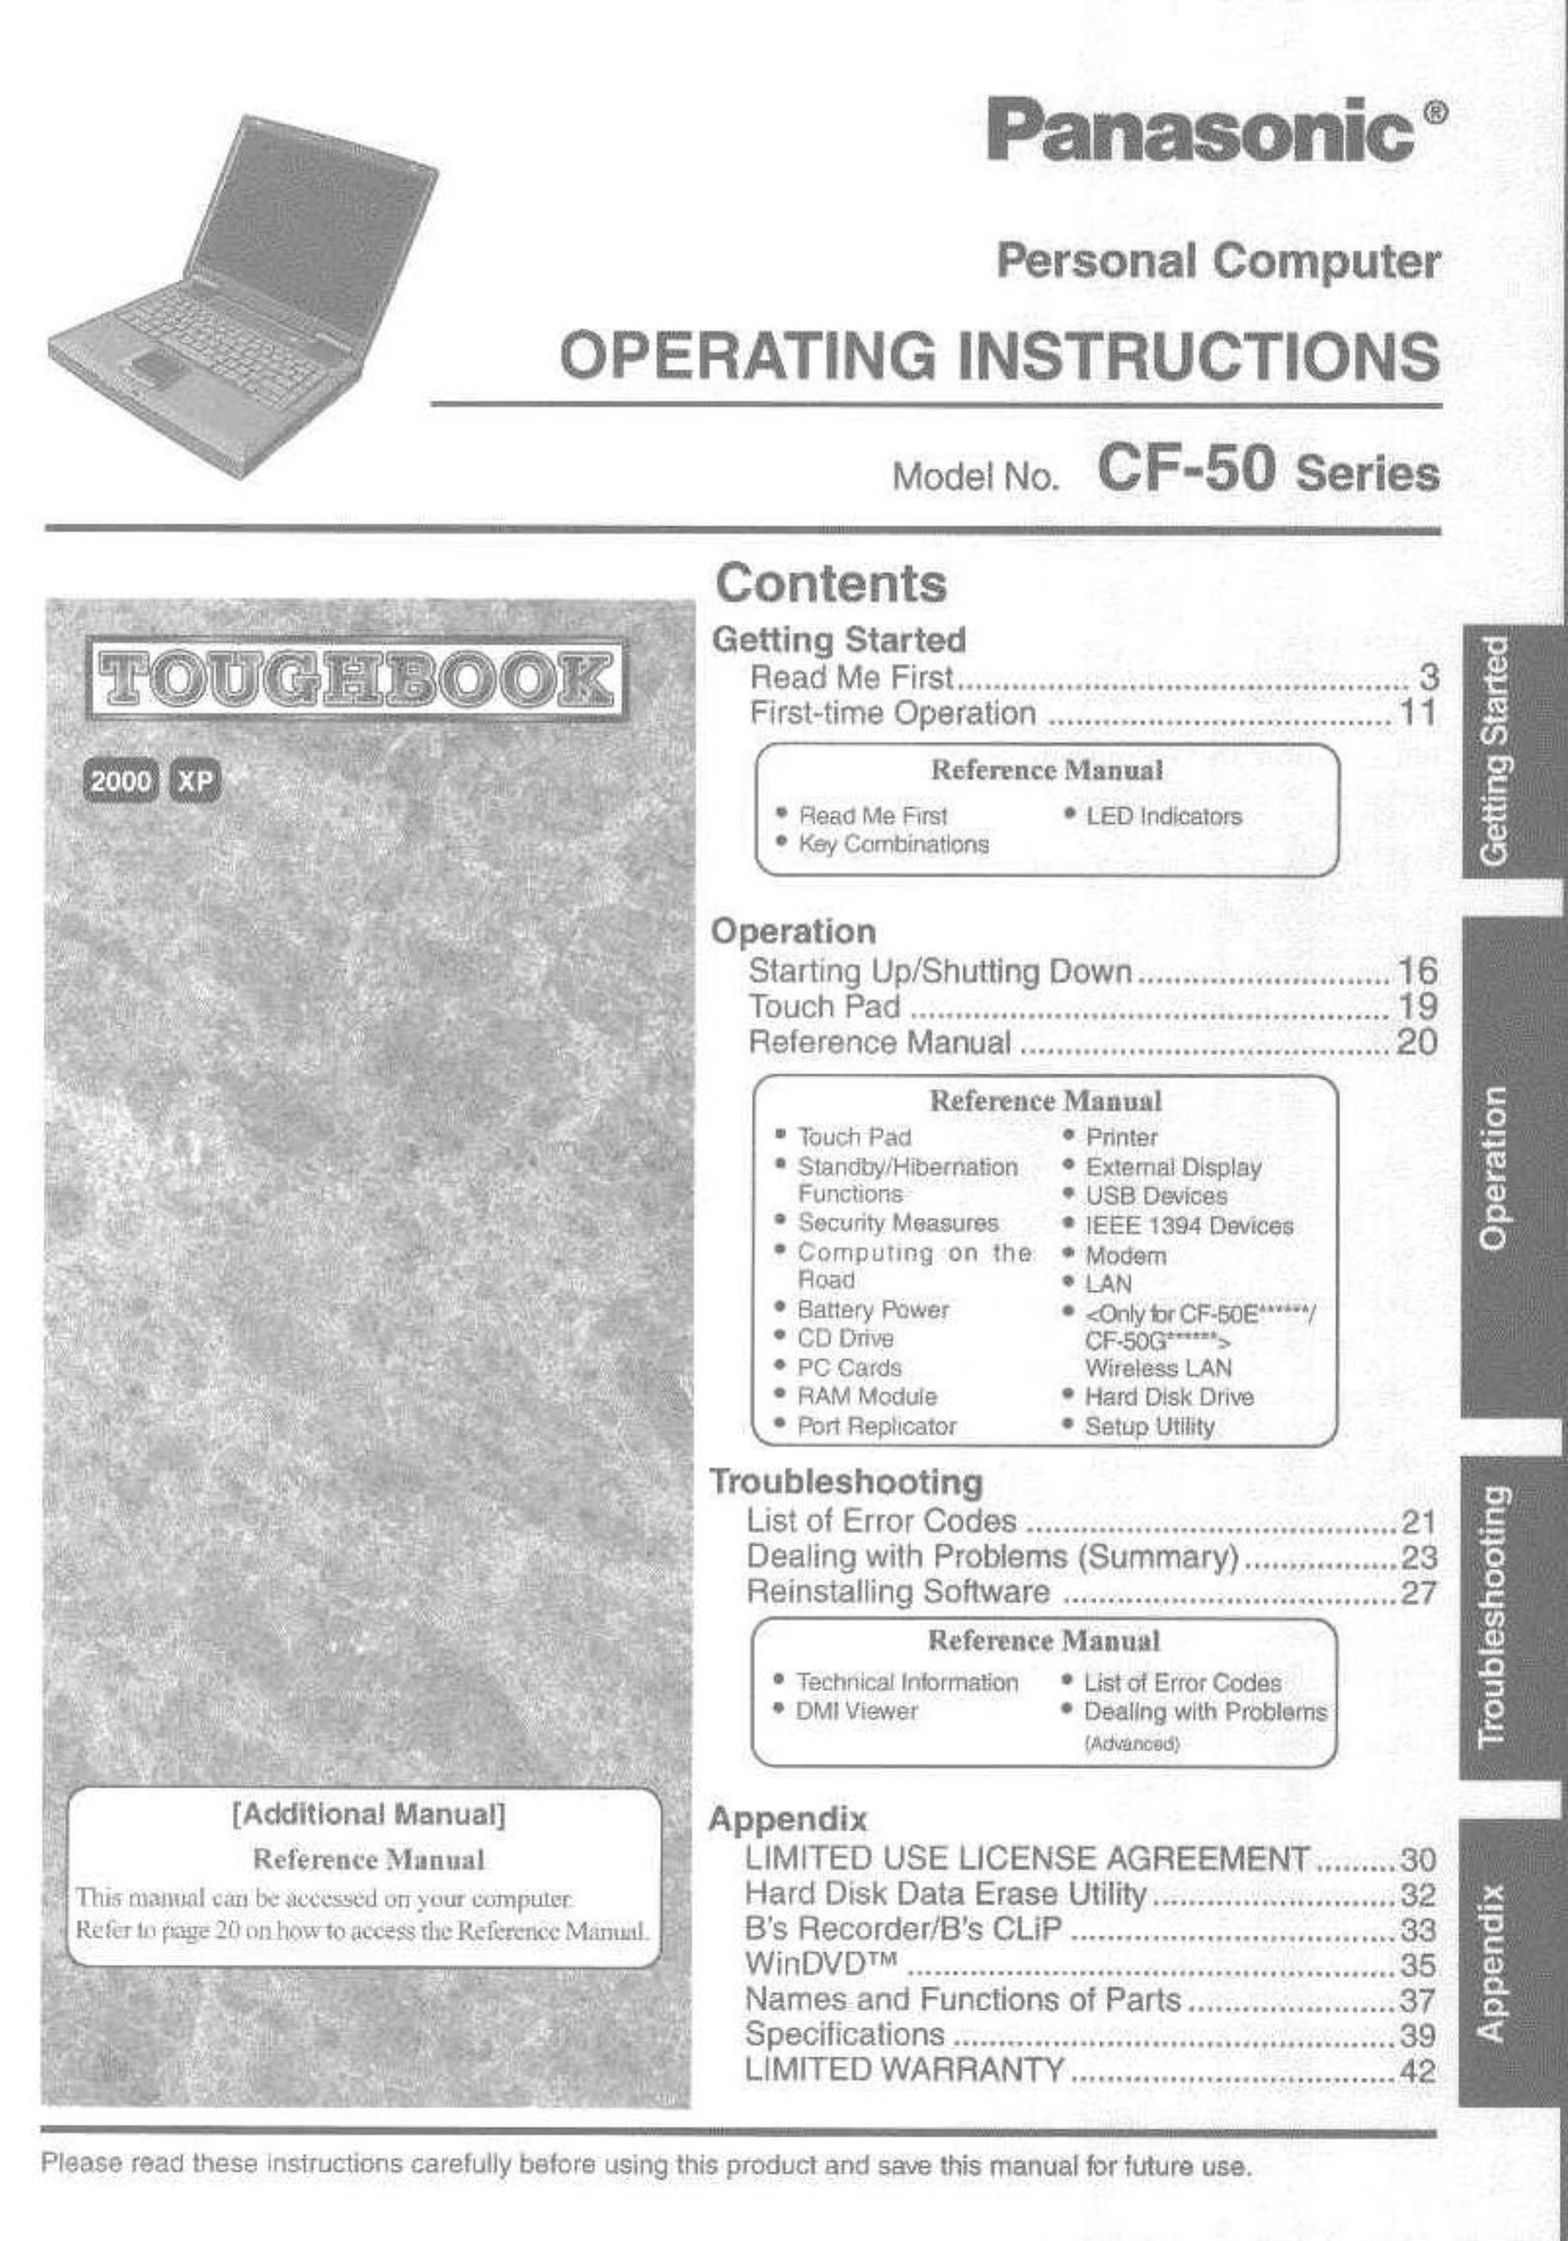 Panasonic CF-50 Personal Computer User Manual